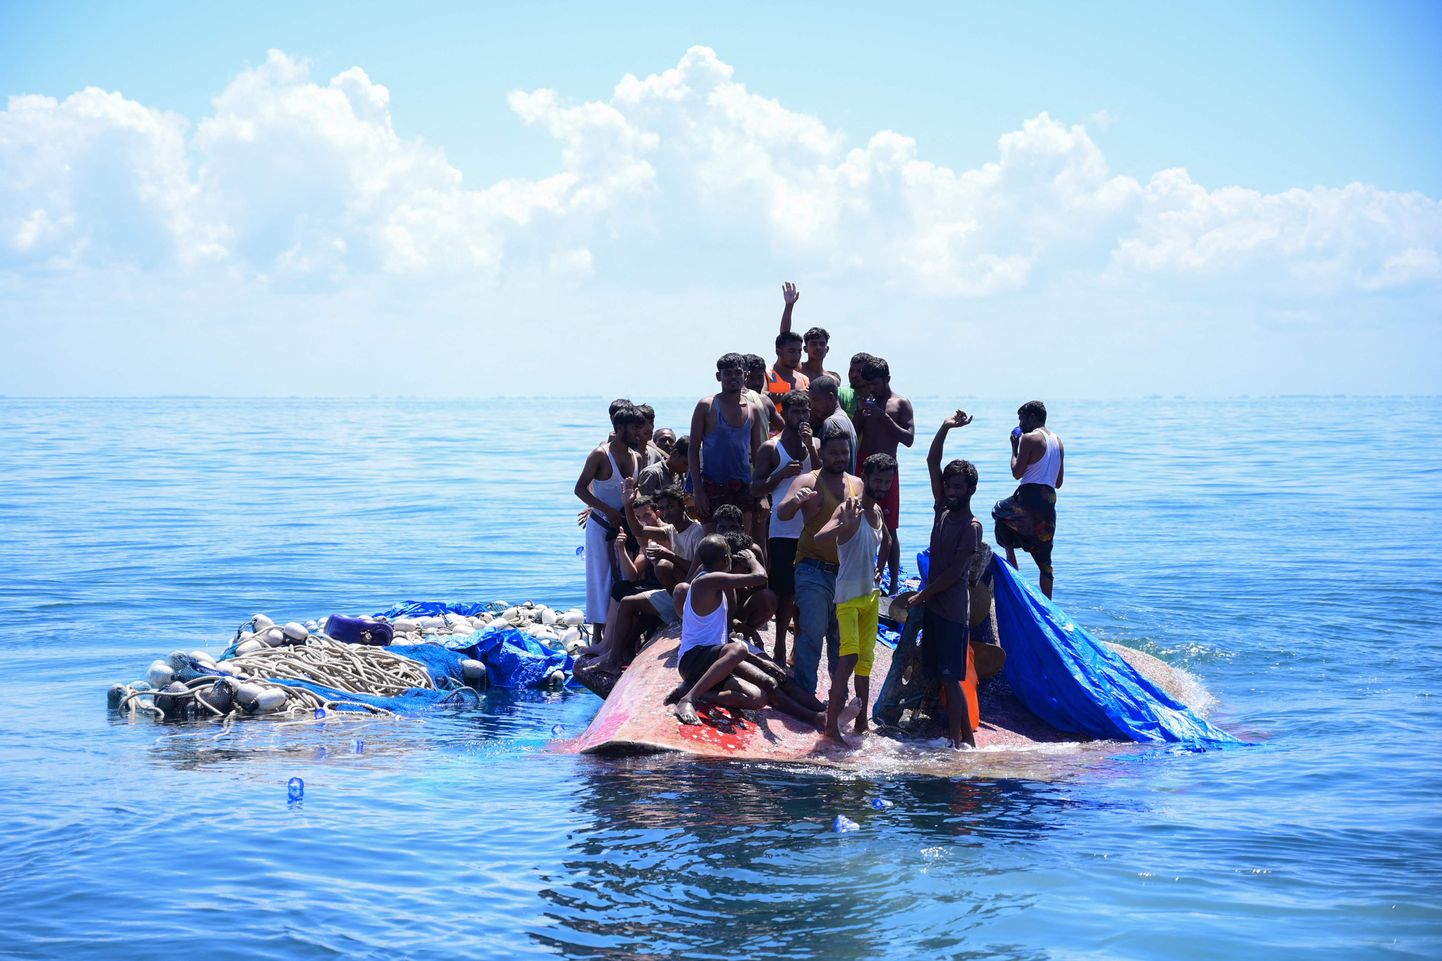 Indoneesias Acehi provintsis merehätta sattunud rohingja põgenikud, kelle kaaslastest kümned leidsid kardetavasti märja haua. Paat paiknes rannikust 16 meremiili (umbes 29 kiomeetri) kaugusel.